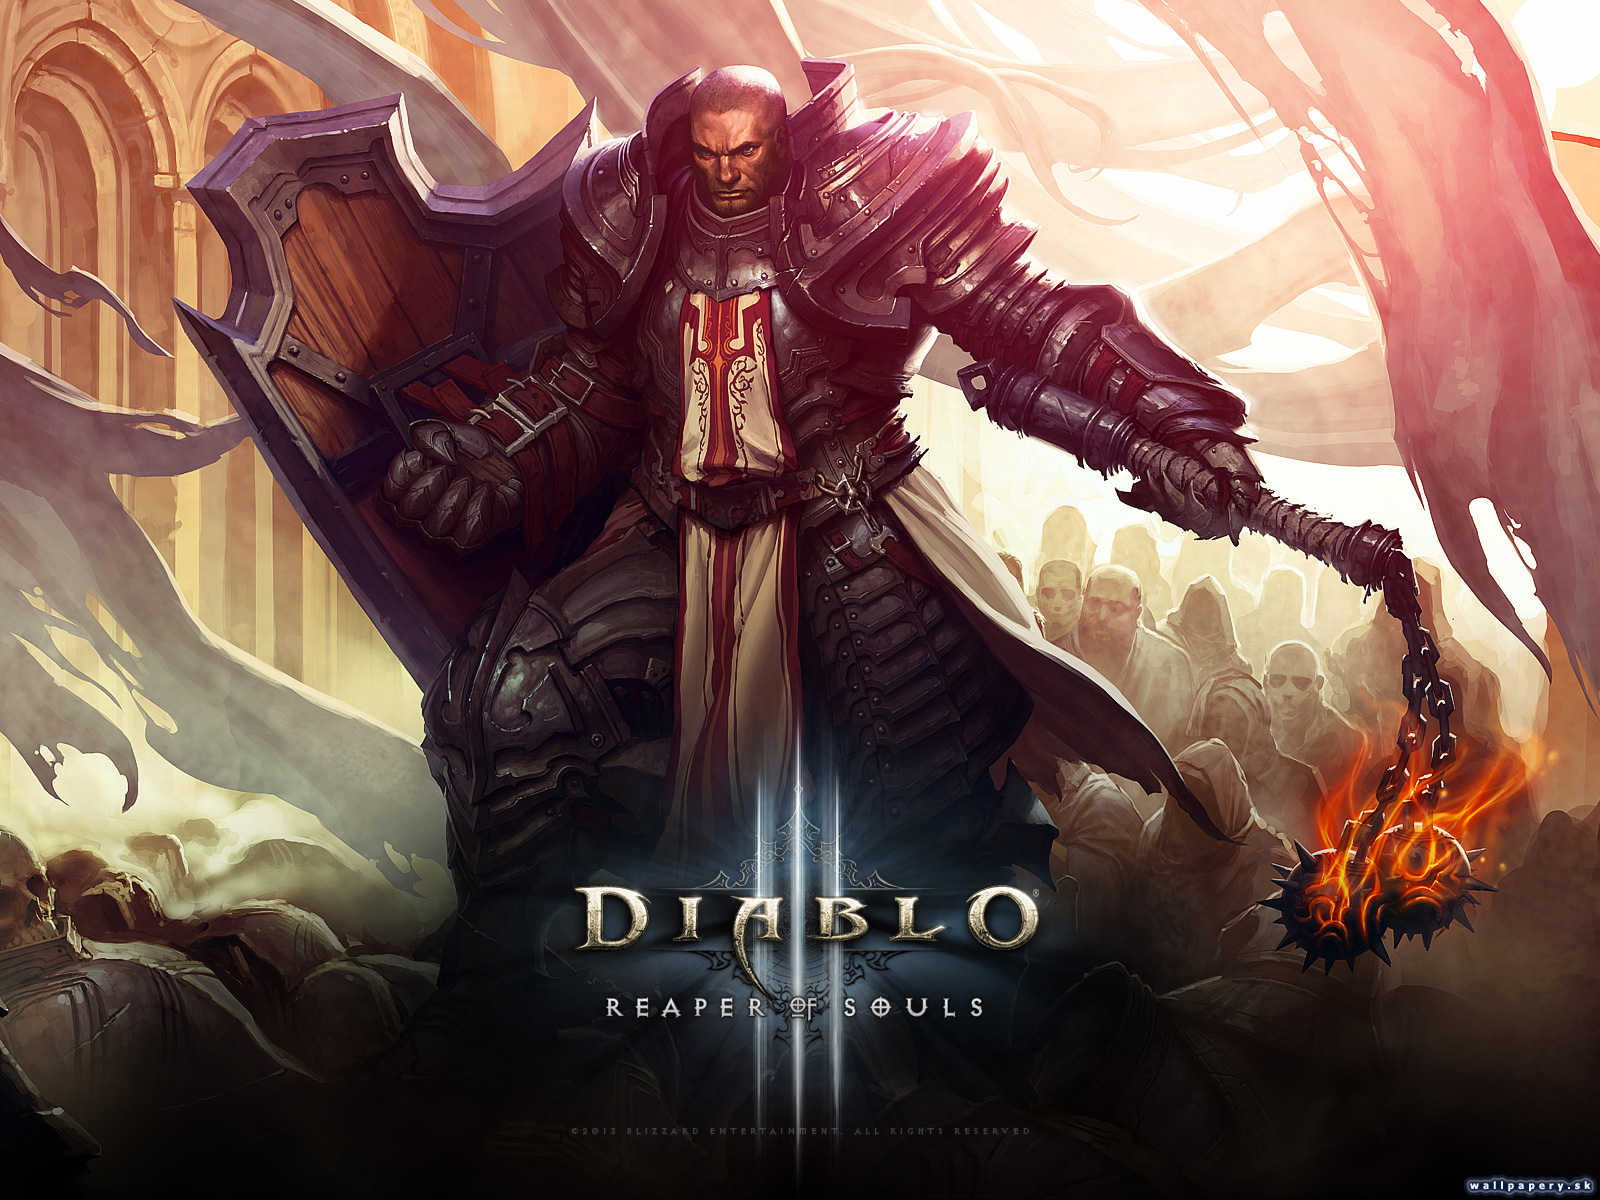 Diablo III: Reaper of Souls - wallpaper 2